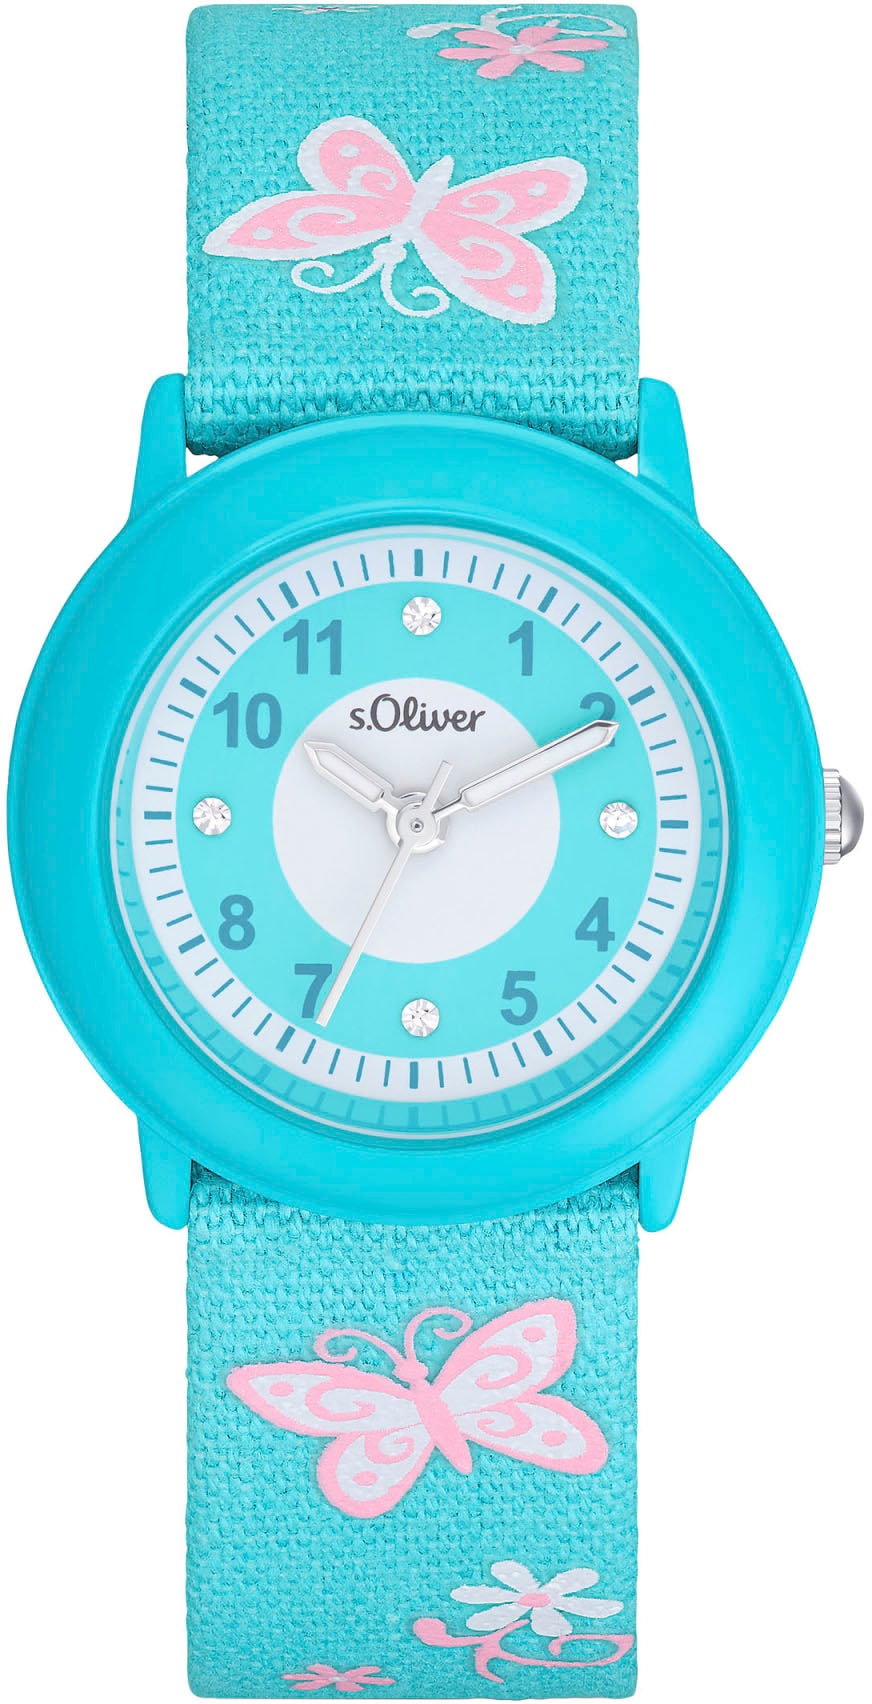 s.Oliver Quarzuhr »2036749«, Armbanduhr, Kinderuhr, ideal auch als Geschenk